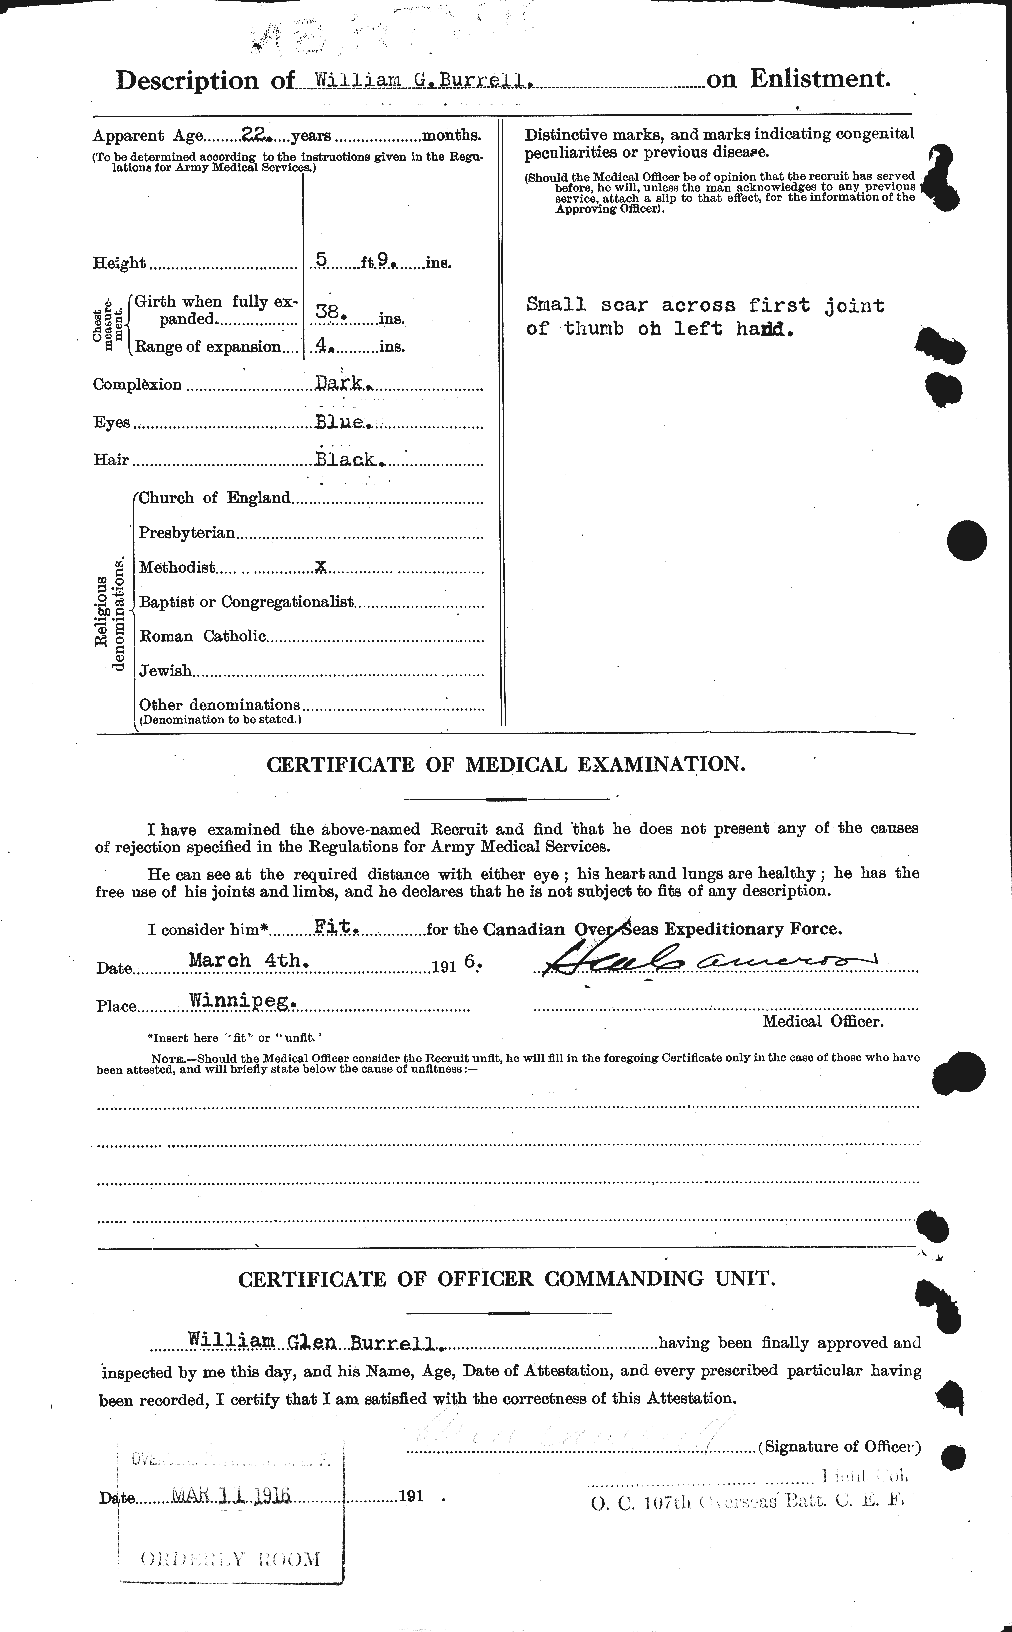 Dossiers du Personnel de la Première Guerre mondiale - CEC 274012b